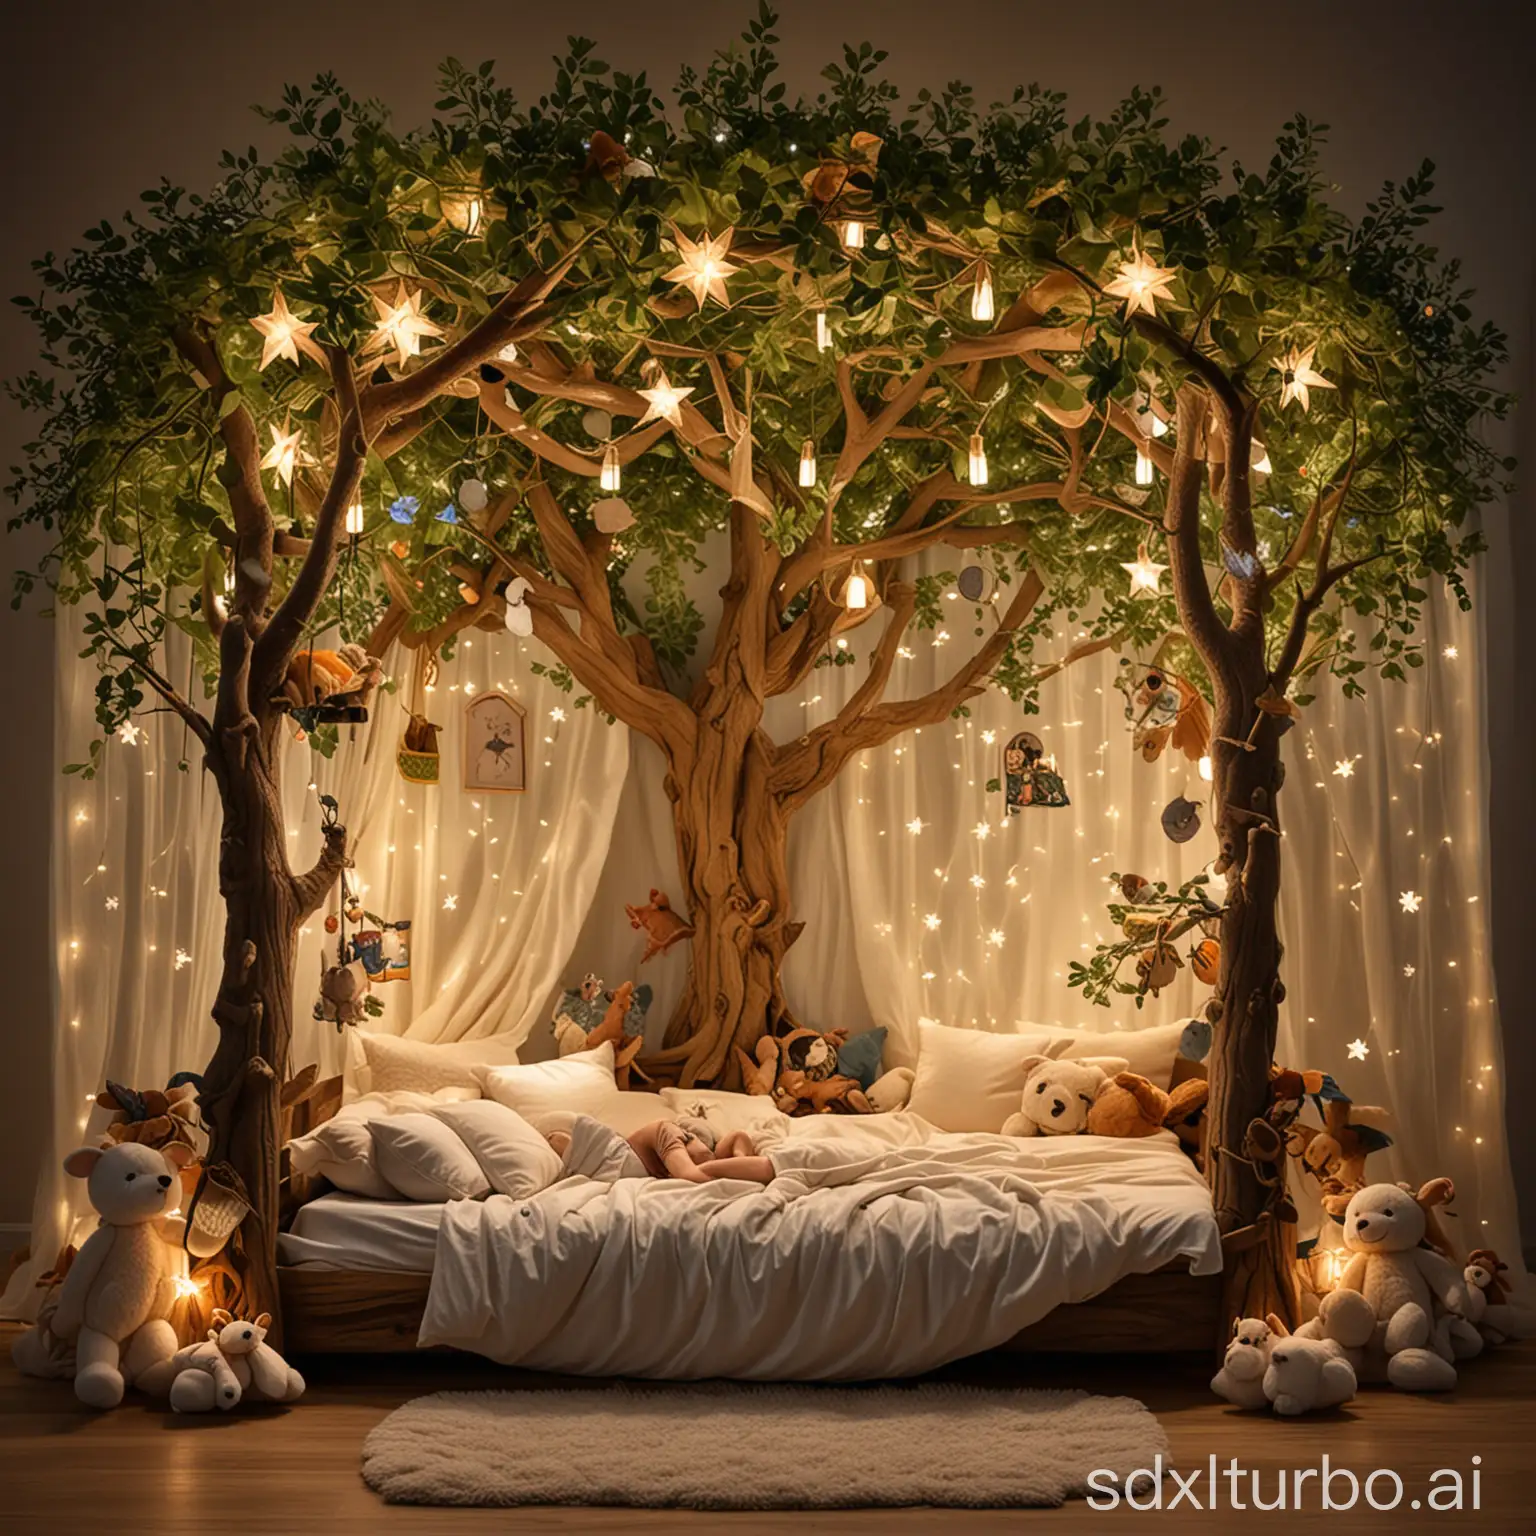  Ein Junge schläft in einem Bett, das wie ein Baumhaus gestaltet ist. Umgeben von Plüsch-Tieren und weichen Kissen in Form von Blättern und Blumen, träumt er von Abenteuern im magischen Märchenwald. Über ihm funkeln LED-Sternenlichter, die an den Ästen angebracht sind.
